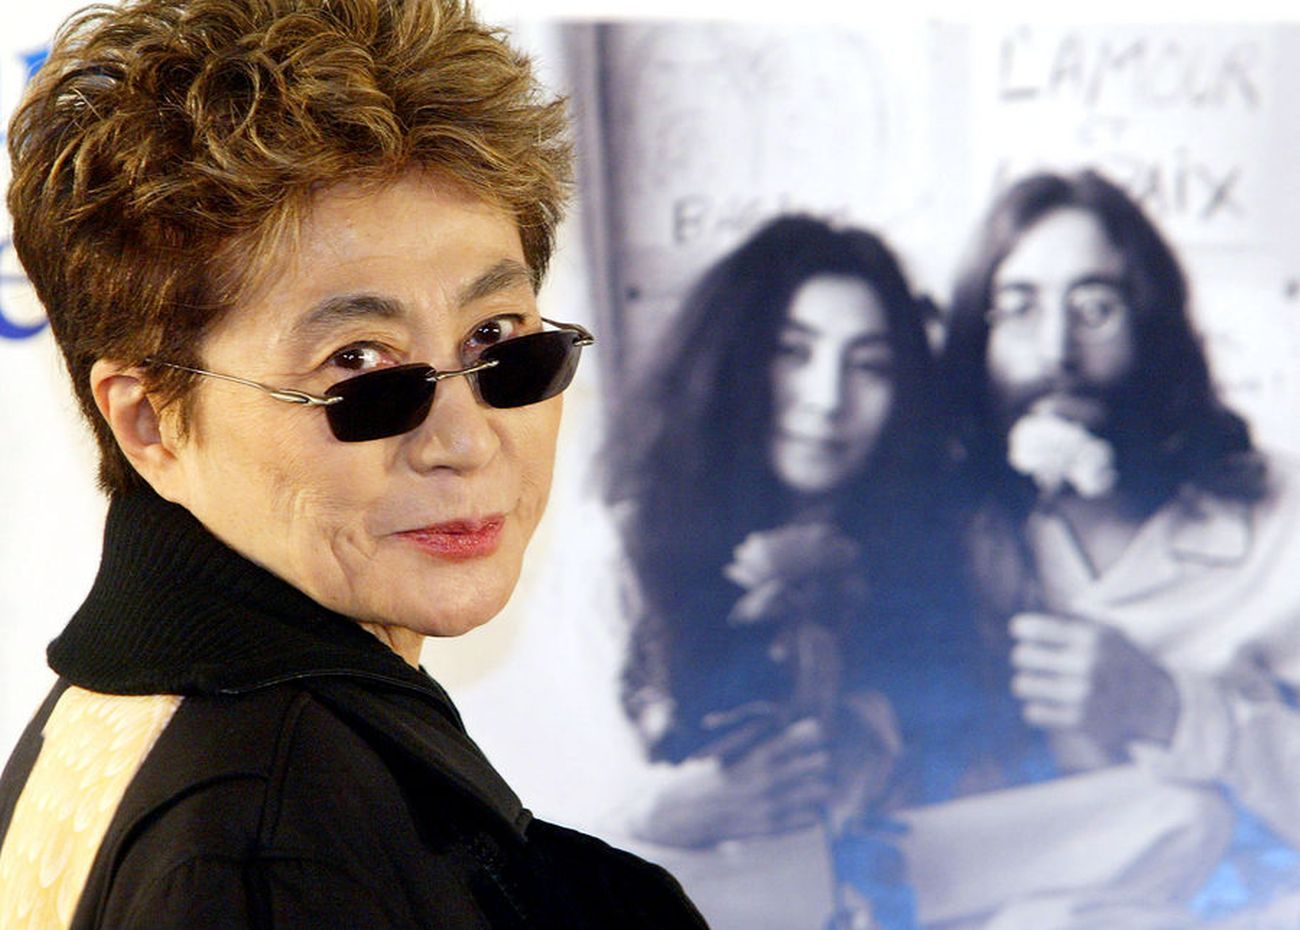 Γιόκο Όνο: Η αιώνια παρεξηγημένη χήρα του Τζον Λένον που κατηγορήθηκε για την διάλυση των Beatles